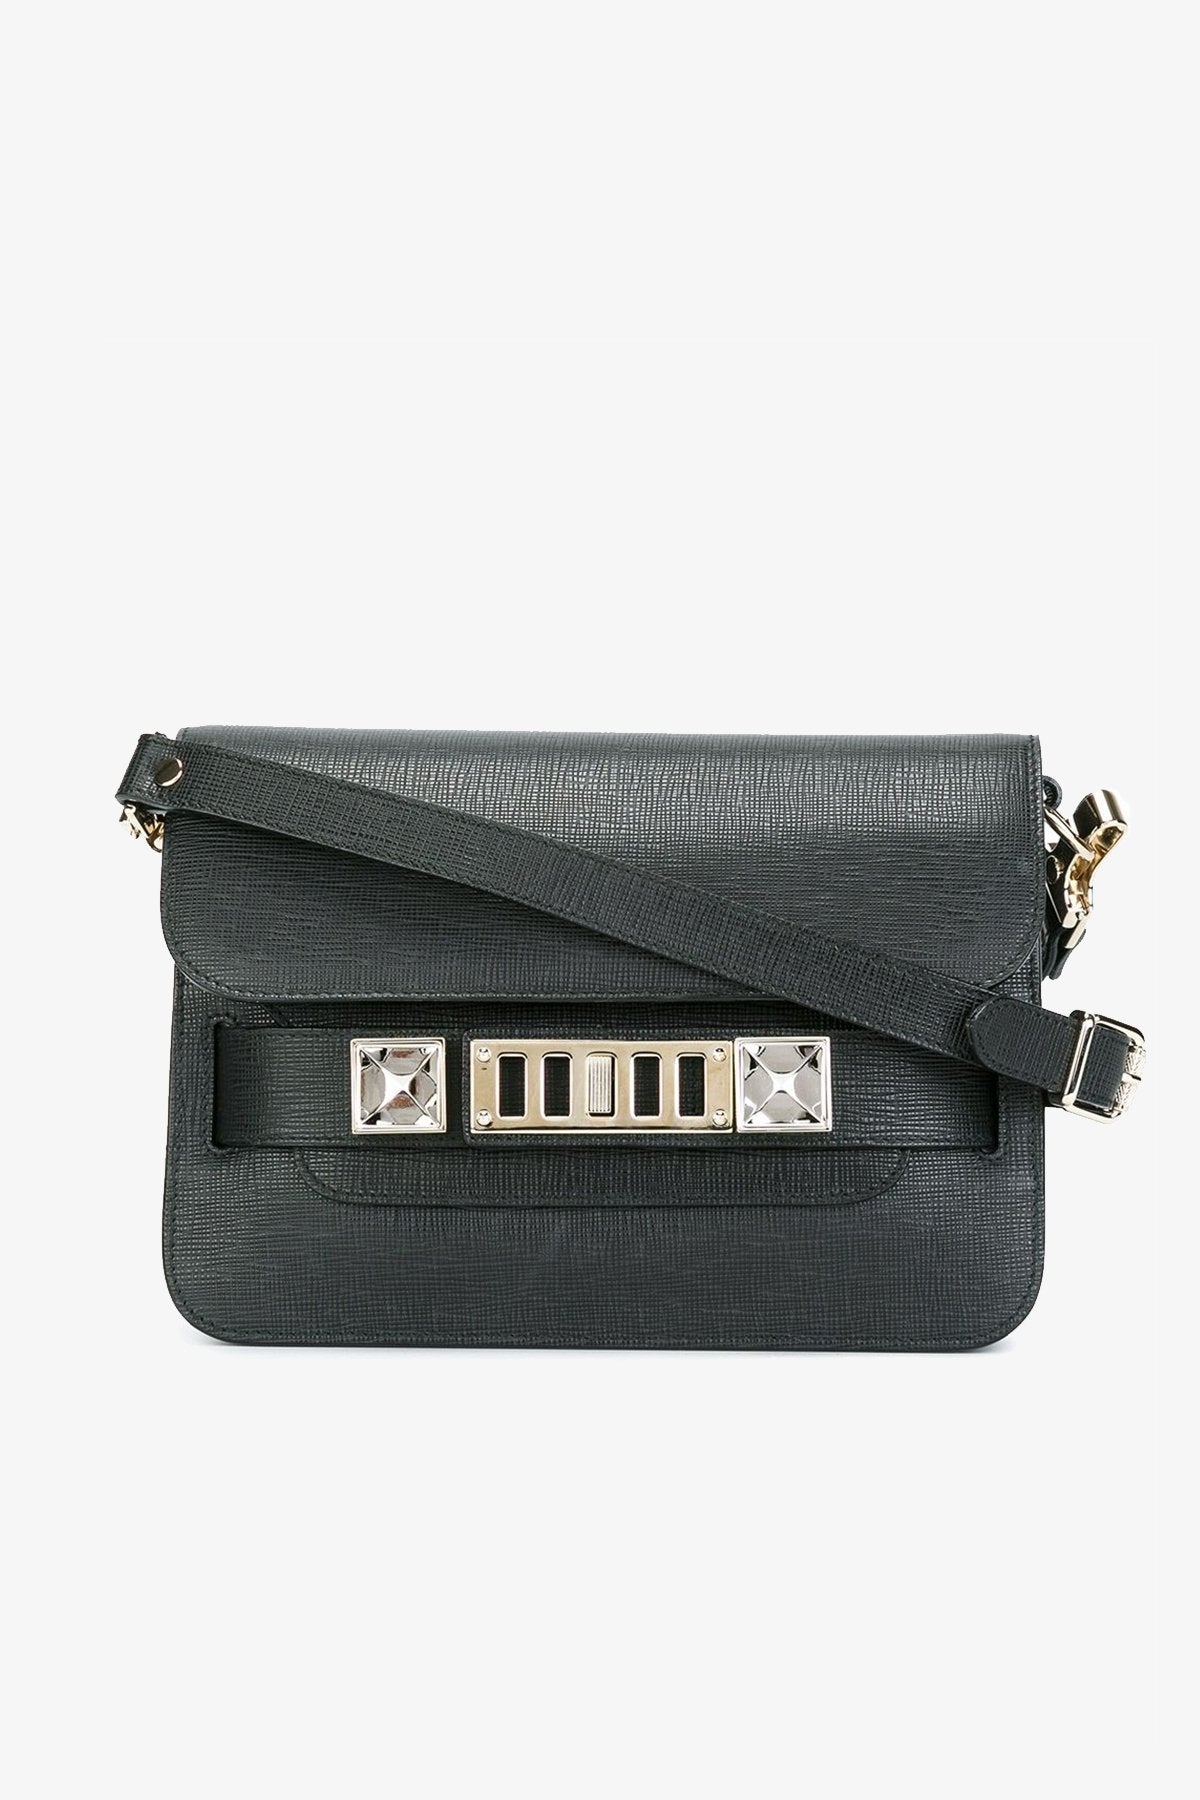 PS11 Mini Classic Bag in Black - shop-olivia.com